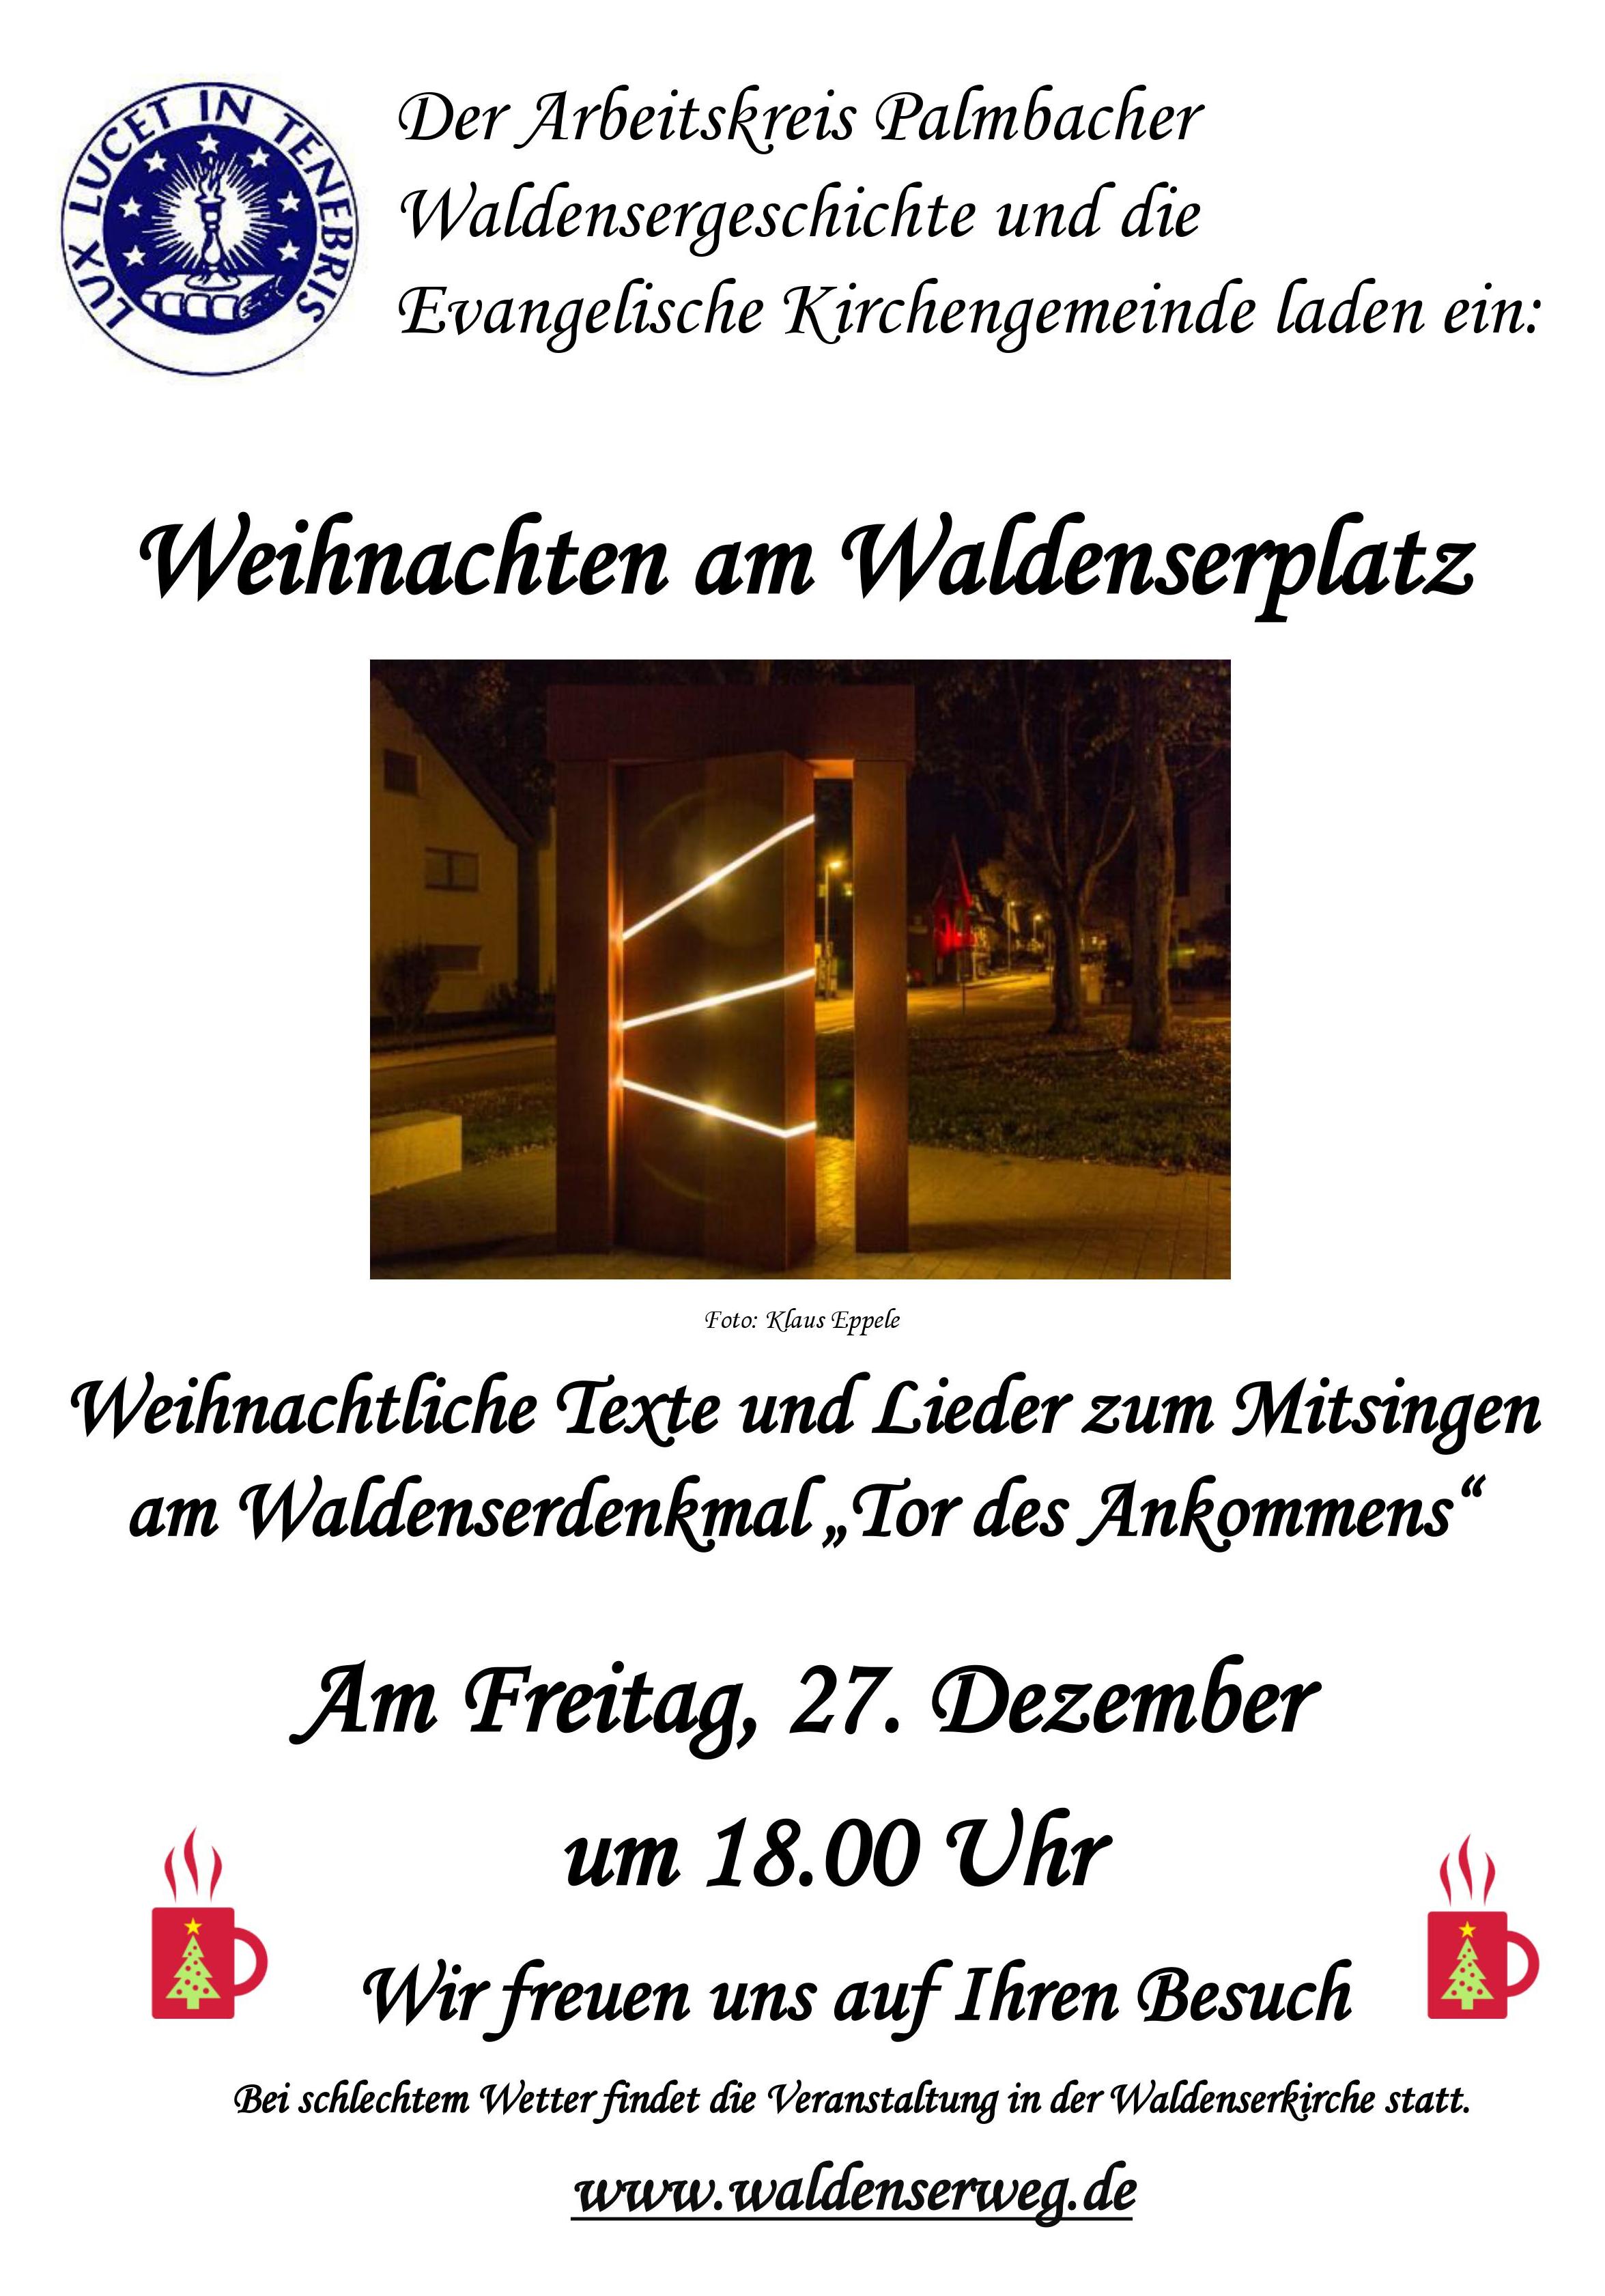 Weihnachtssingen am Waldenserplatz in KA-Palmbach